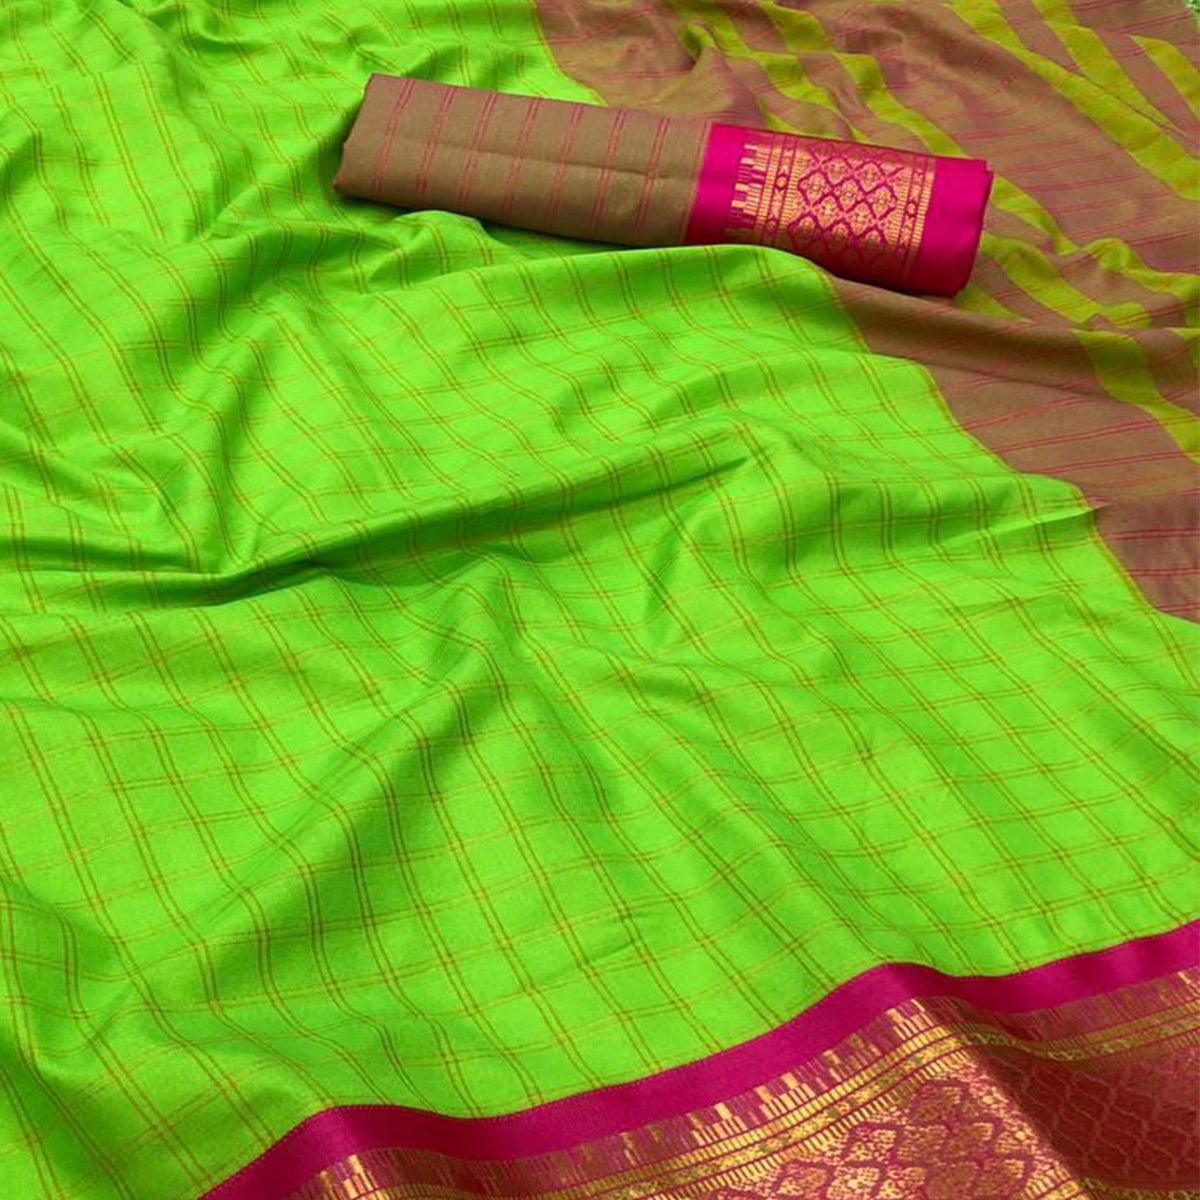 Parrot Green Festive Wear Checks With Woven Border Cotton Silk Saree - Peachmode